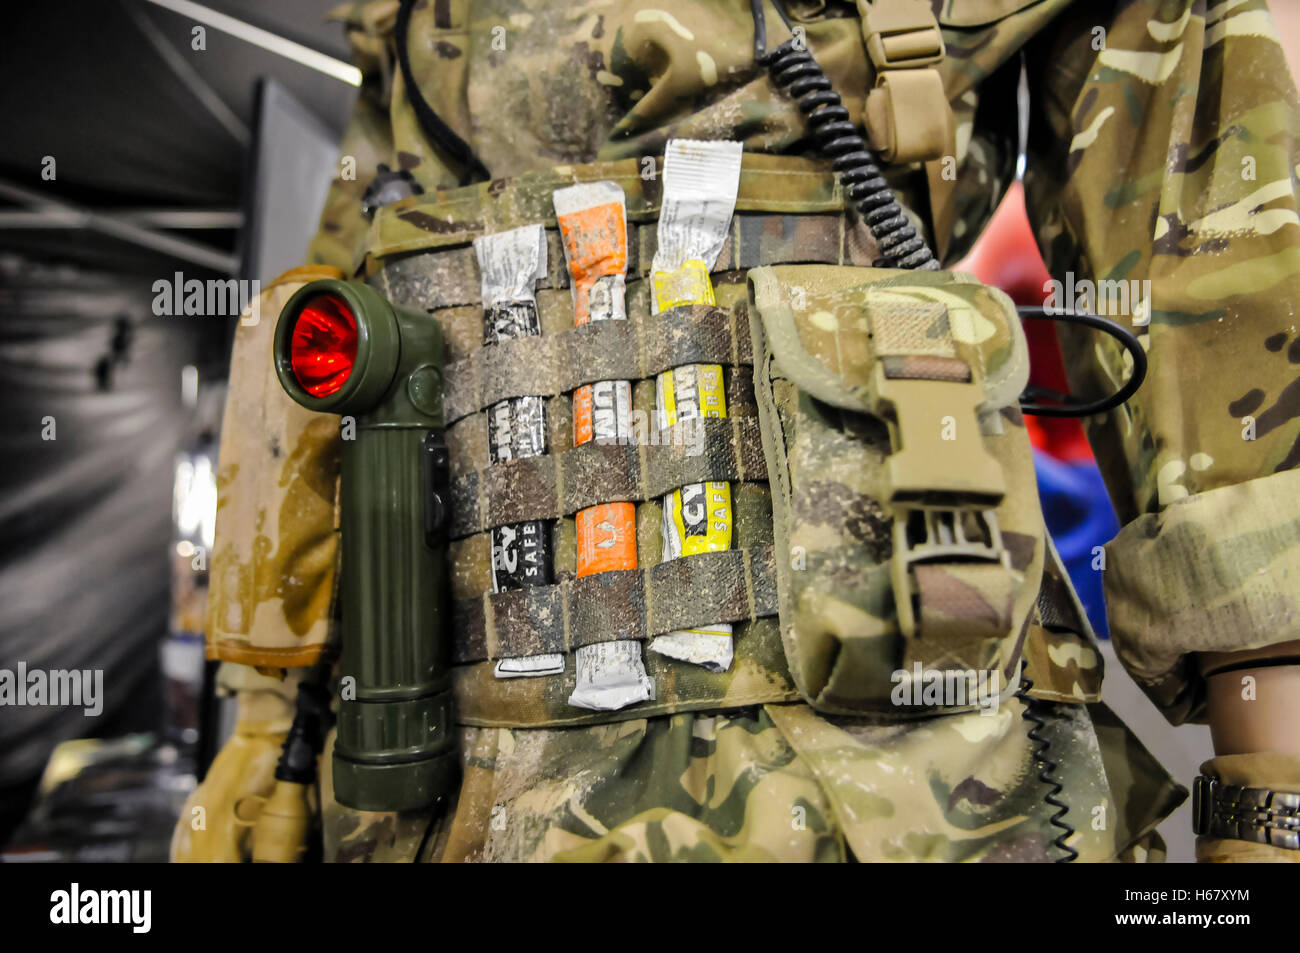 Soldier utility porta cinghia con una torcia con filtro rosso e Cyalume glow stick per le operazioni notturne. Foto Stock